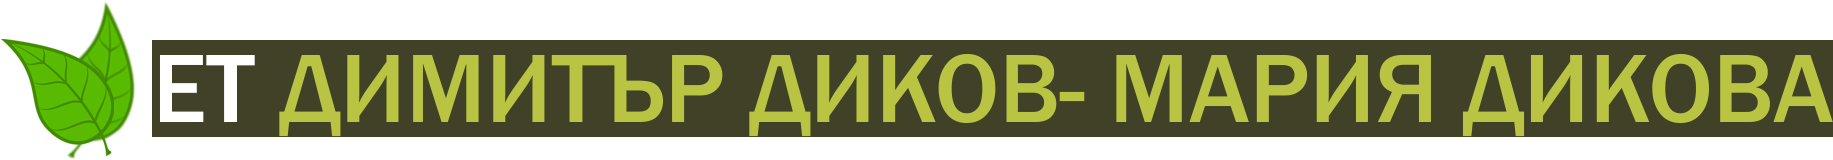 dikov-et.com